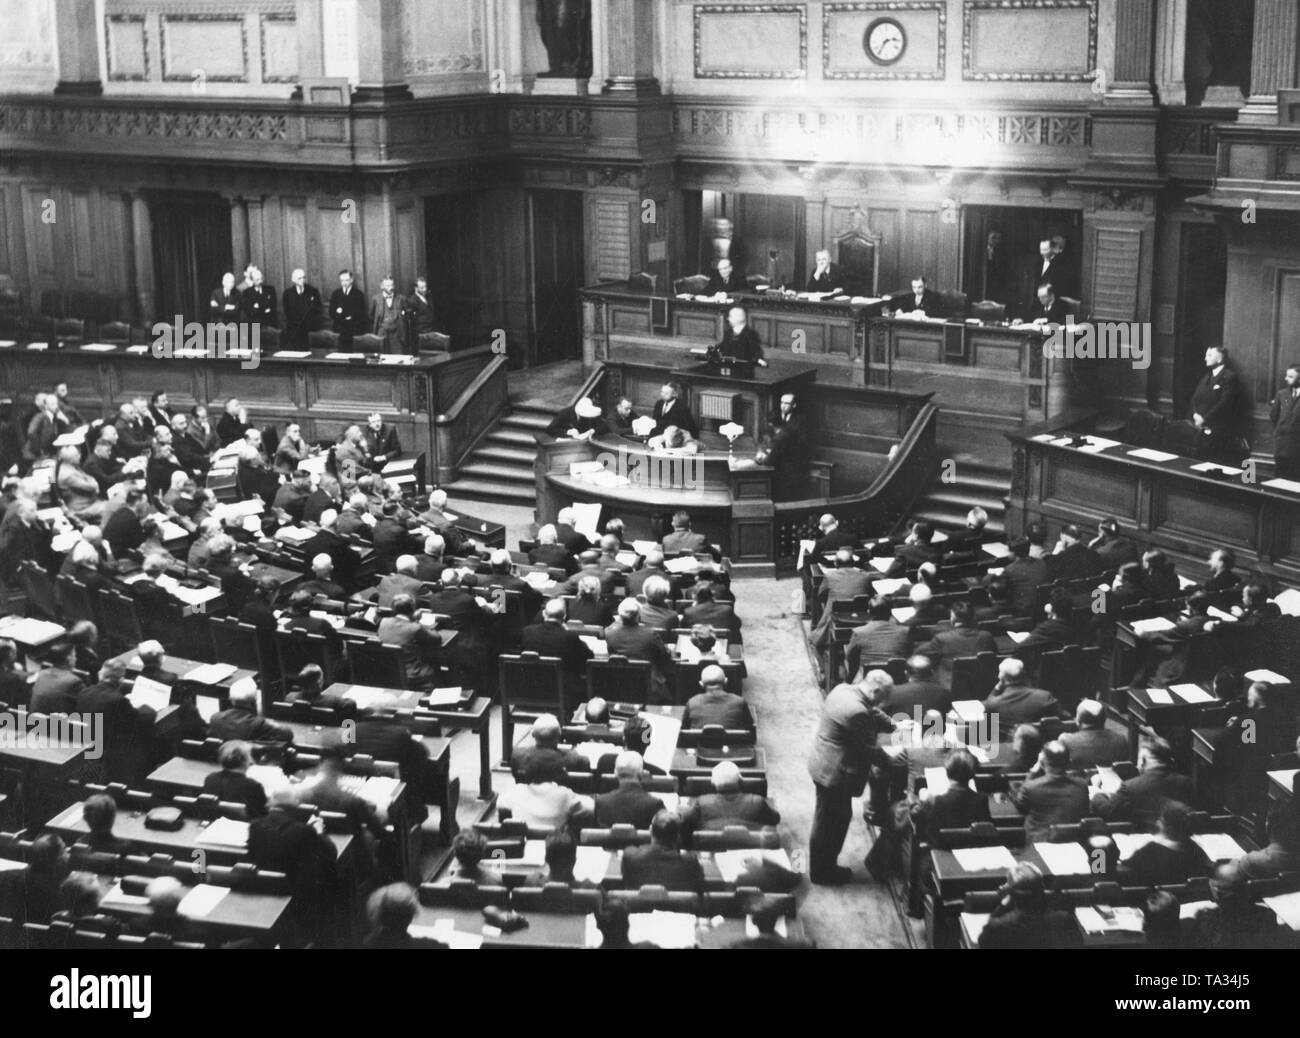 Nel corso di una riunione del Landtag Prussiano, vice e la fazione di piombo il NSDAP gruppo parlamentare, Wilhelm Kube, avanza una proposta contro la brutalità della polizia. Foto Stock